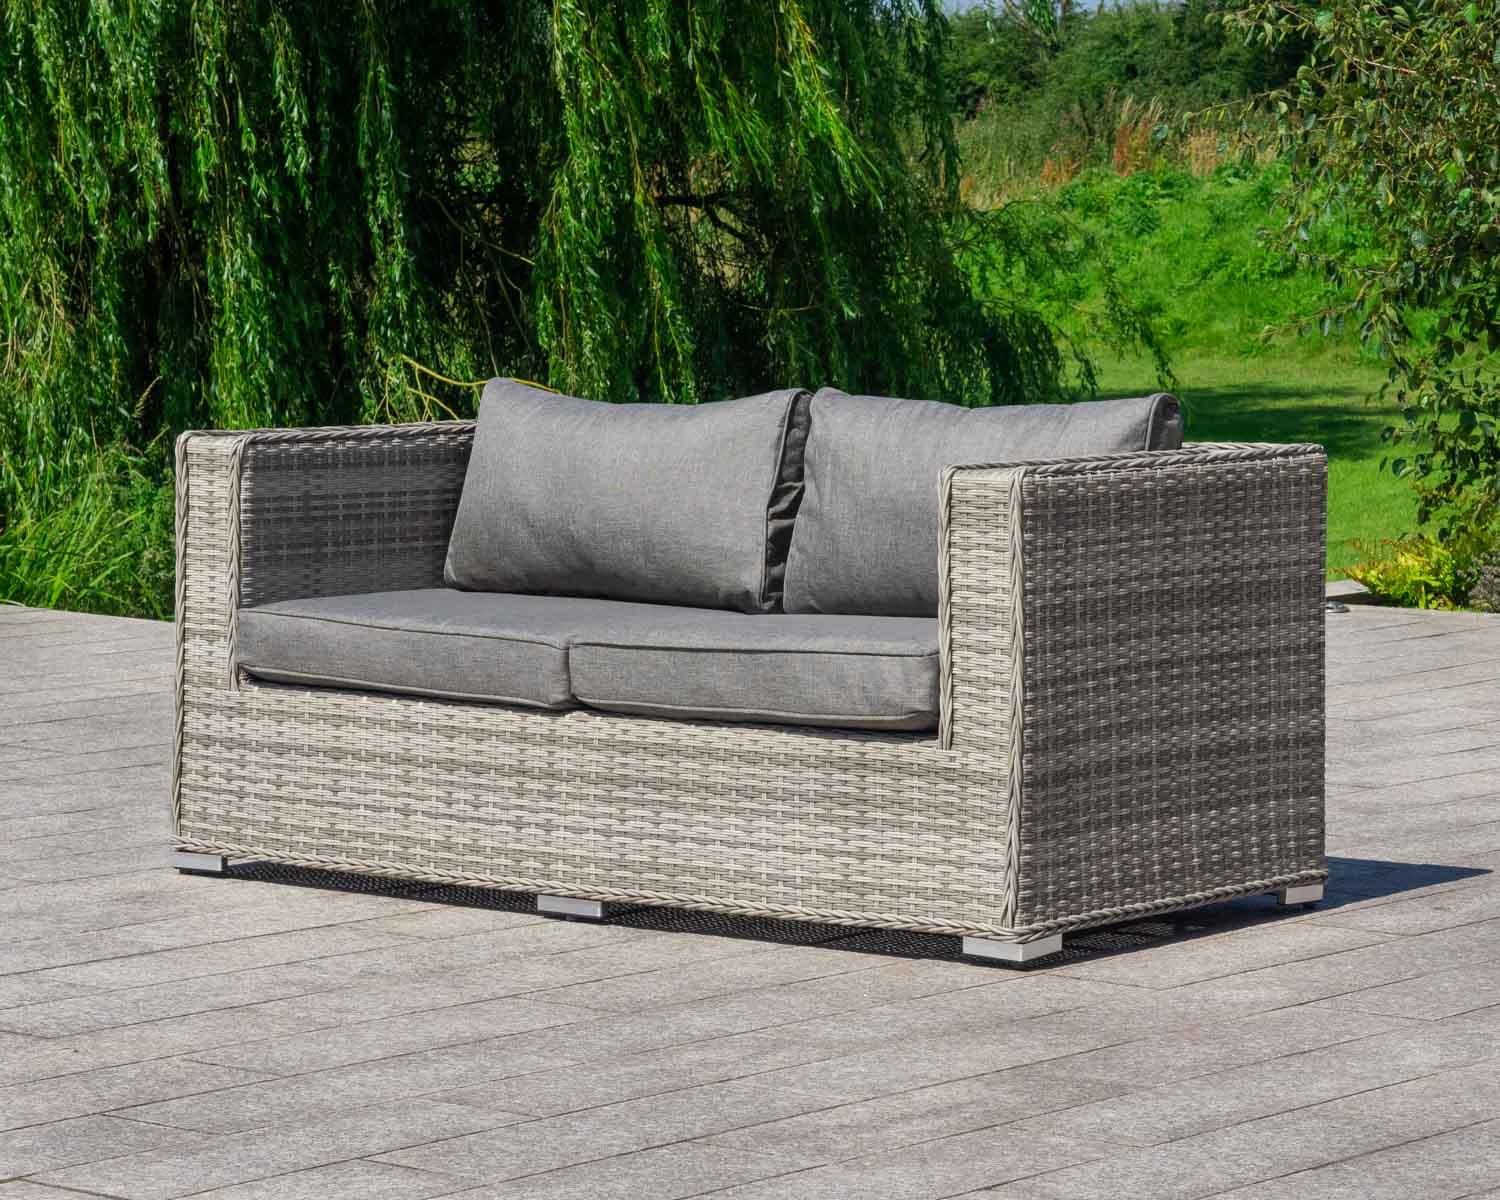 2 Seat Rattan Garden Sofa in Grey - Ascot - Rattan Garden Furniture